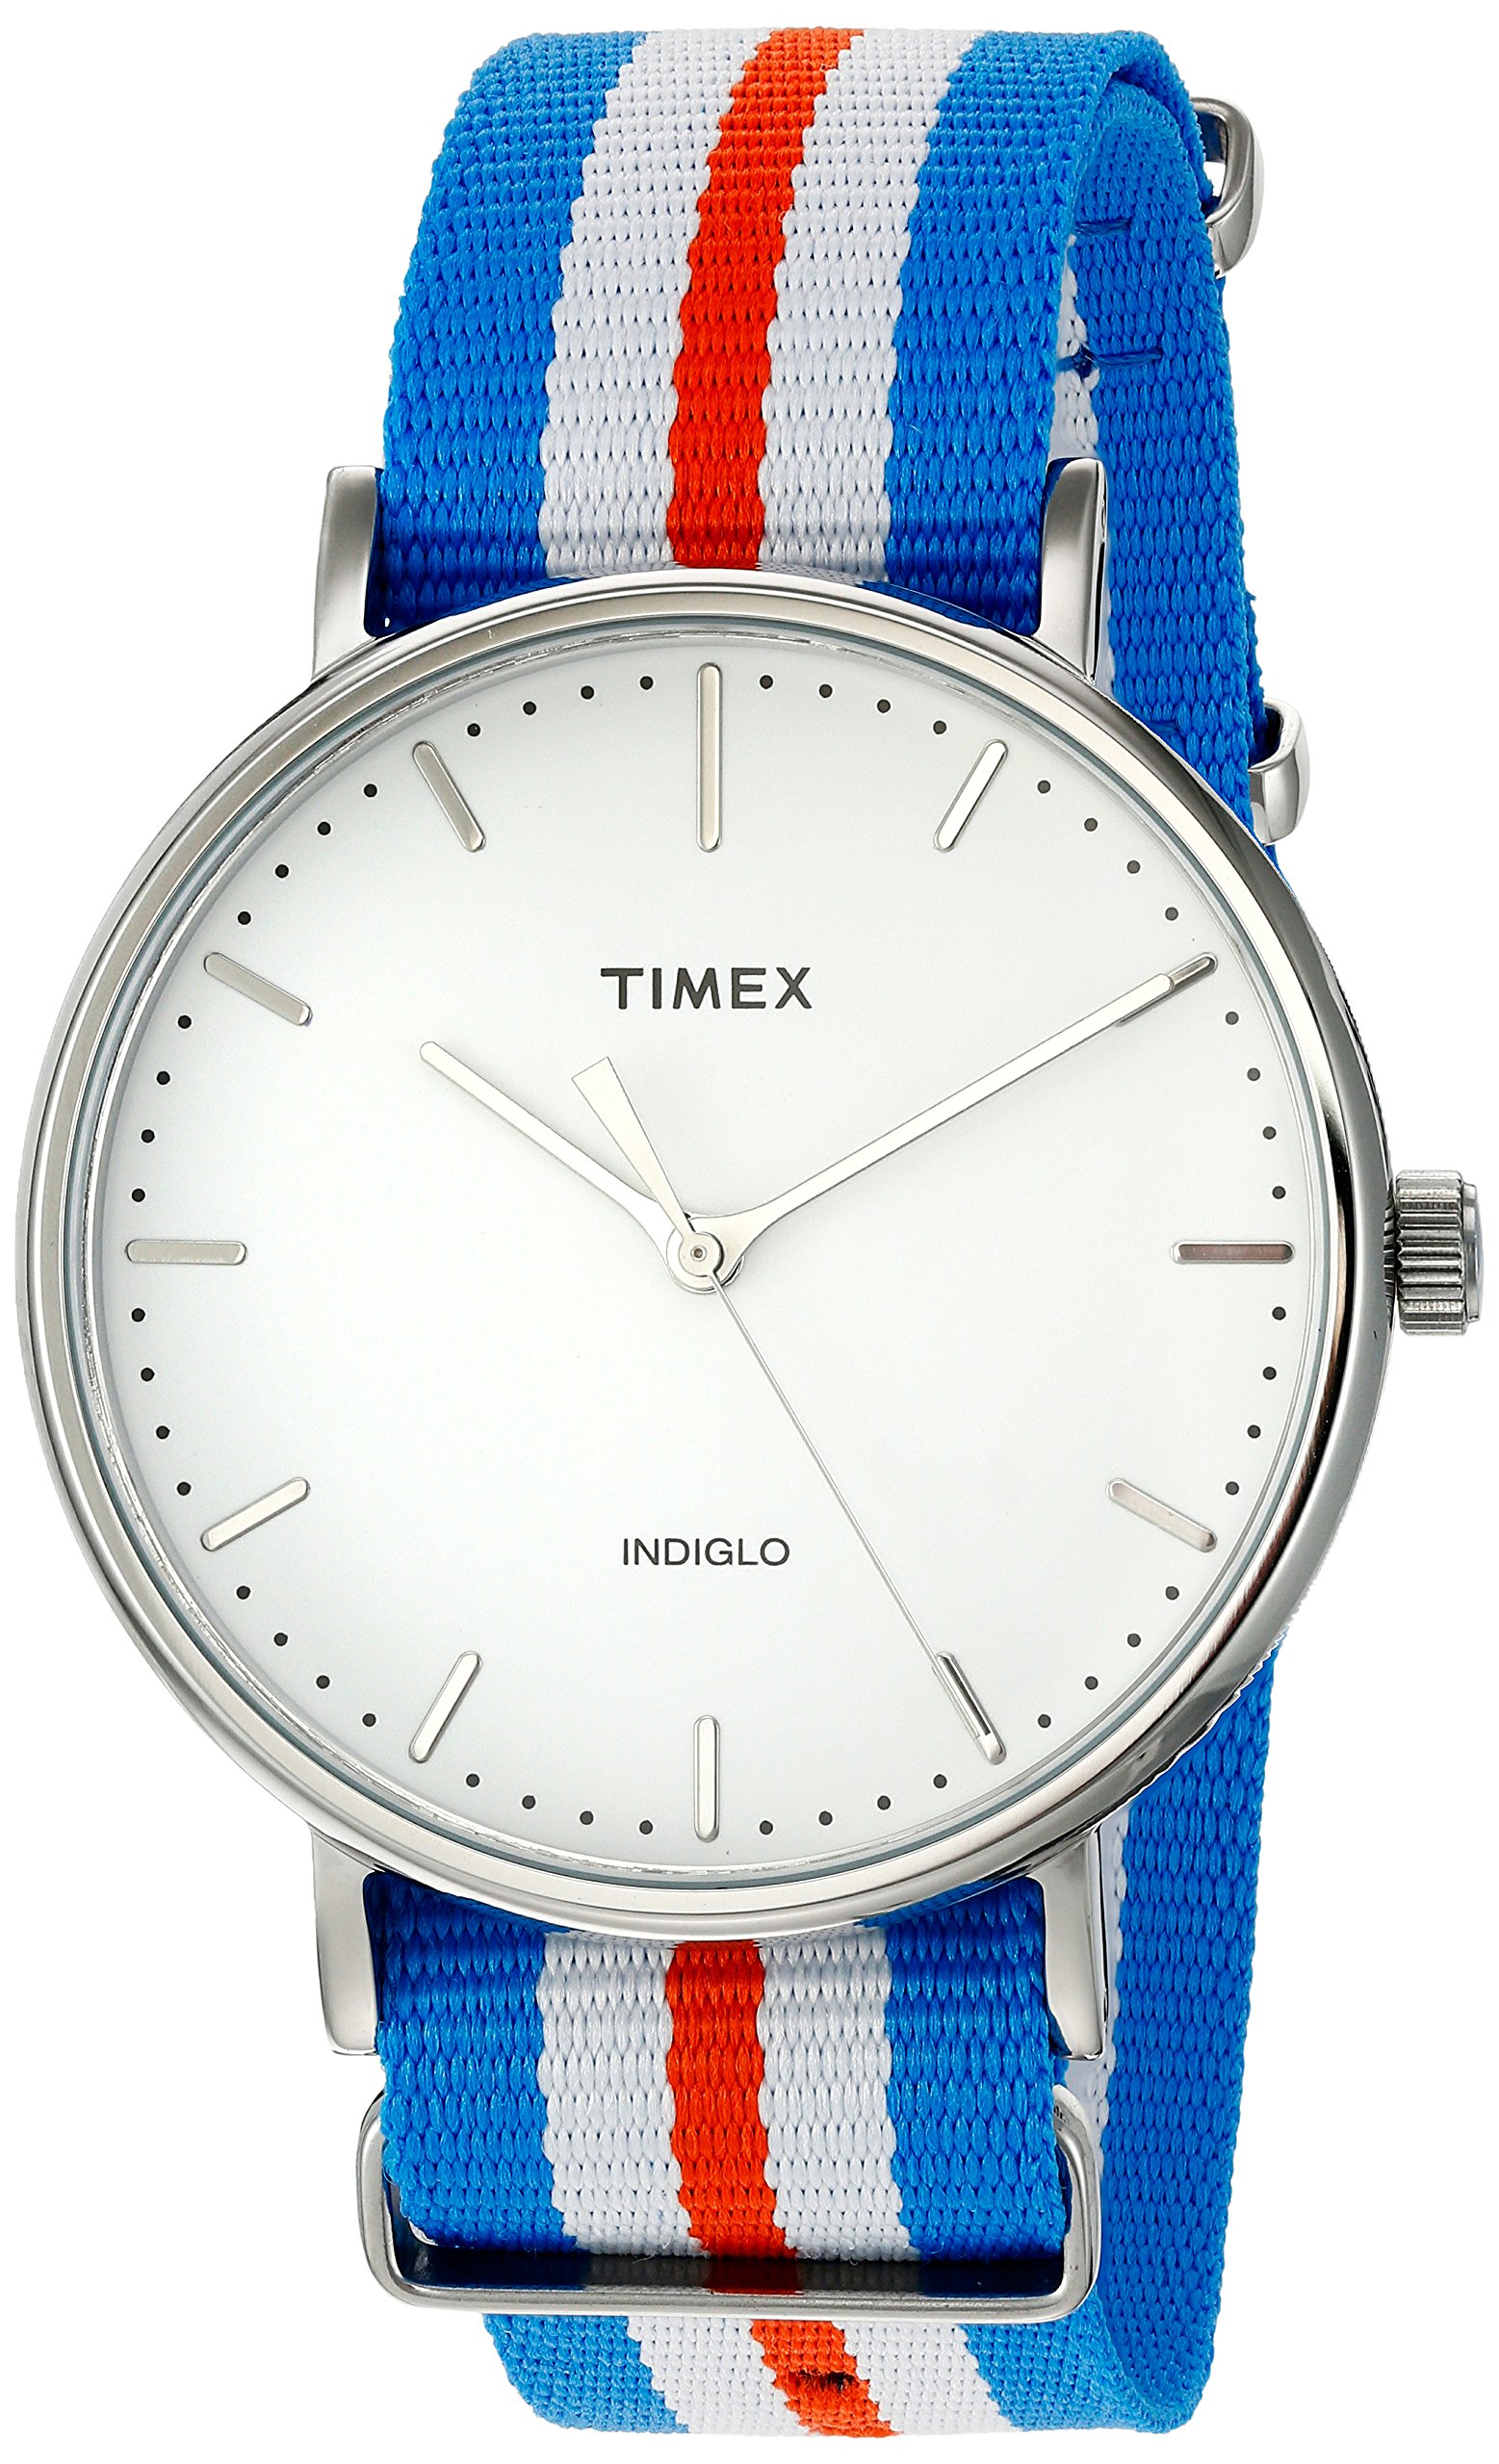 タイメックス 腕時計 ウィークエンダーフェアフィールド TW2P91100 正規輸入品 マルチカラー